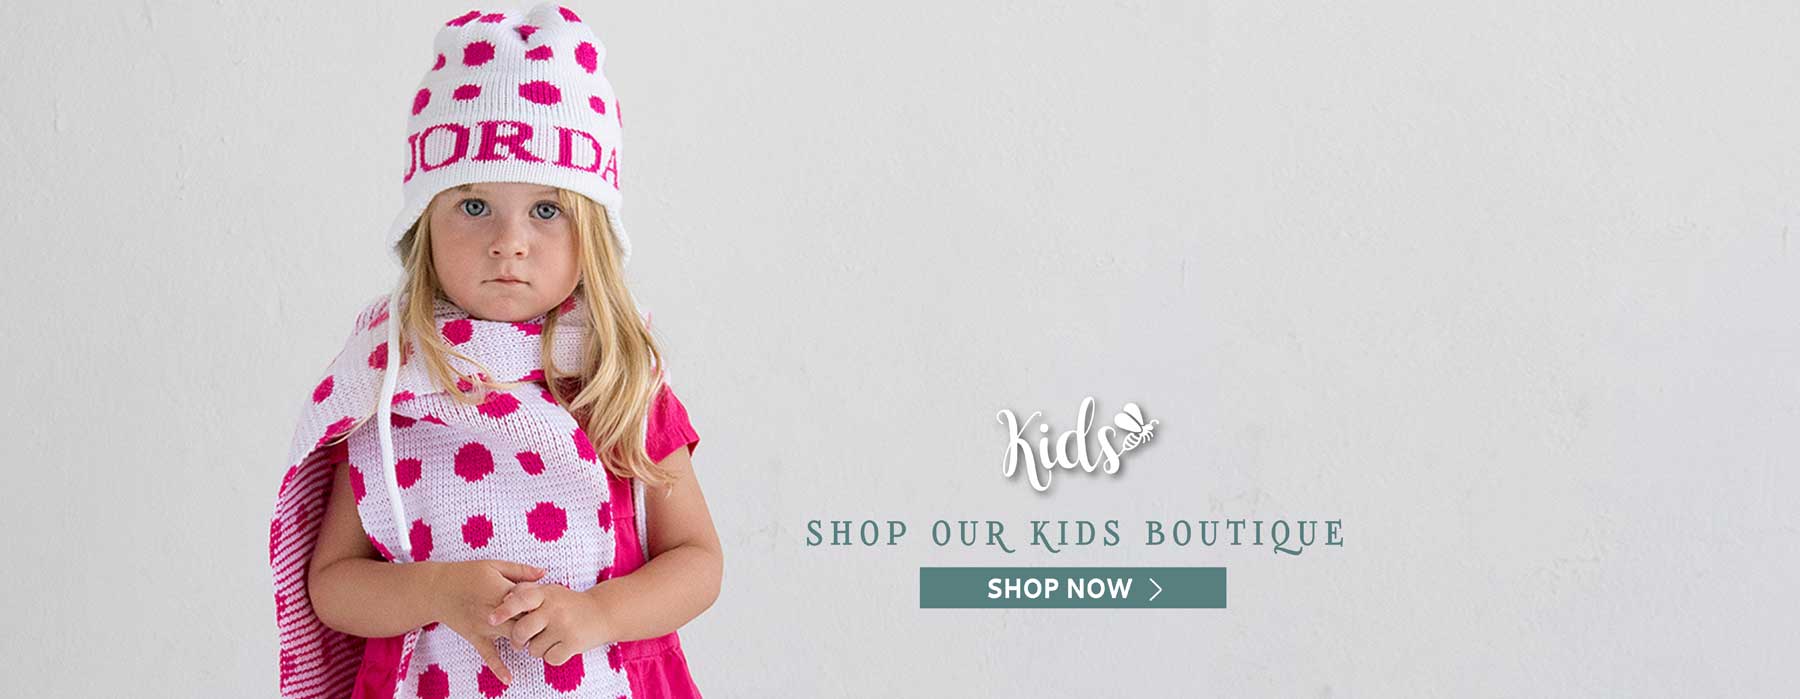 Kids - Shop Our Kids Boutique